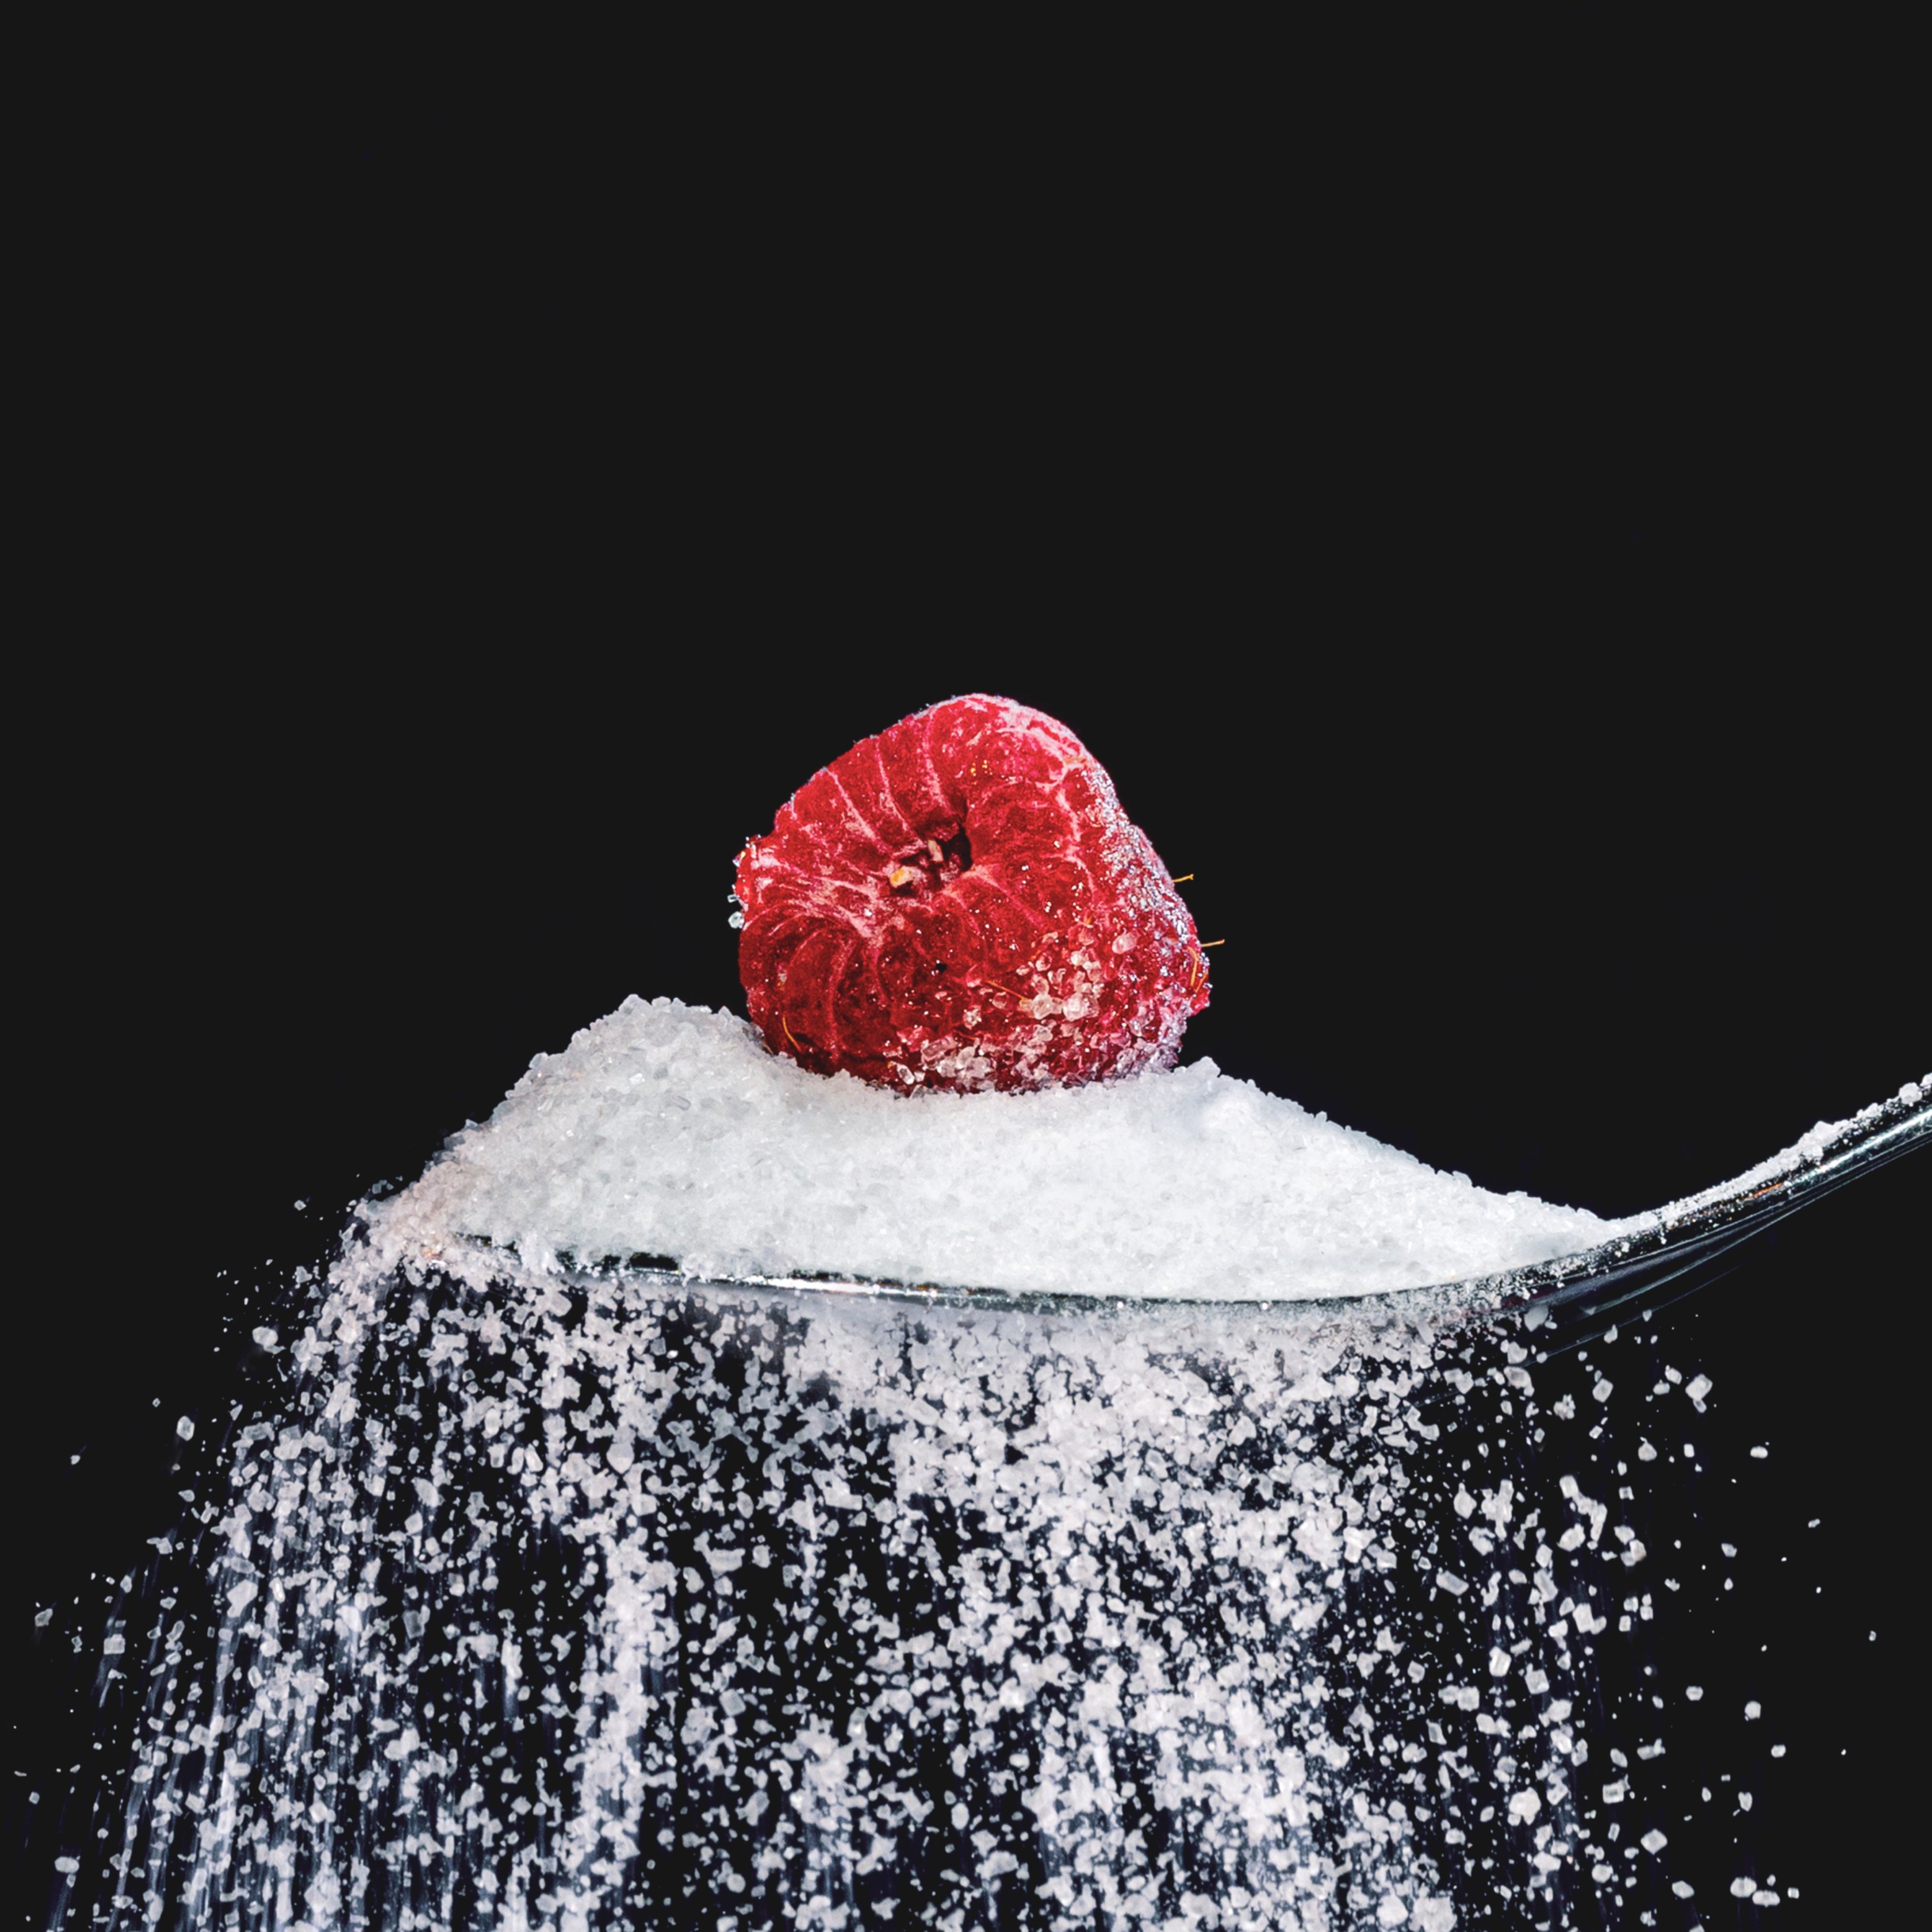 El azúcar puede alterar el cerebro en solo 12 días